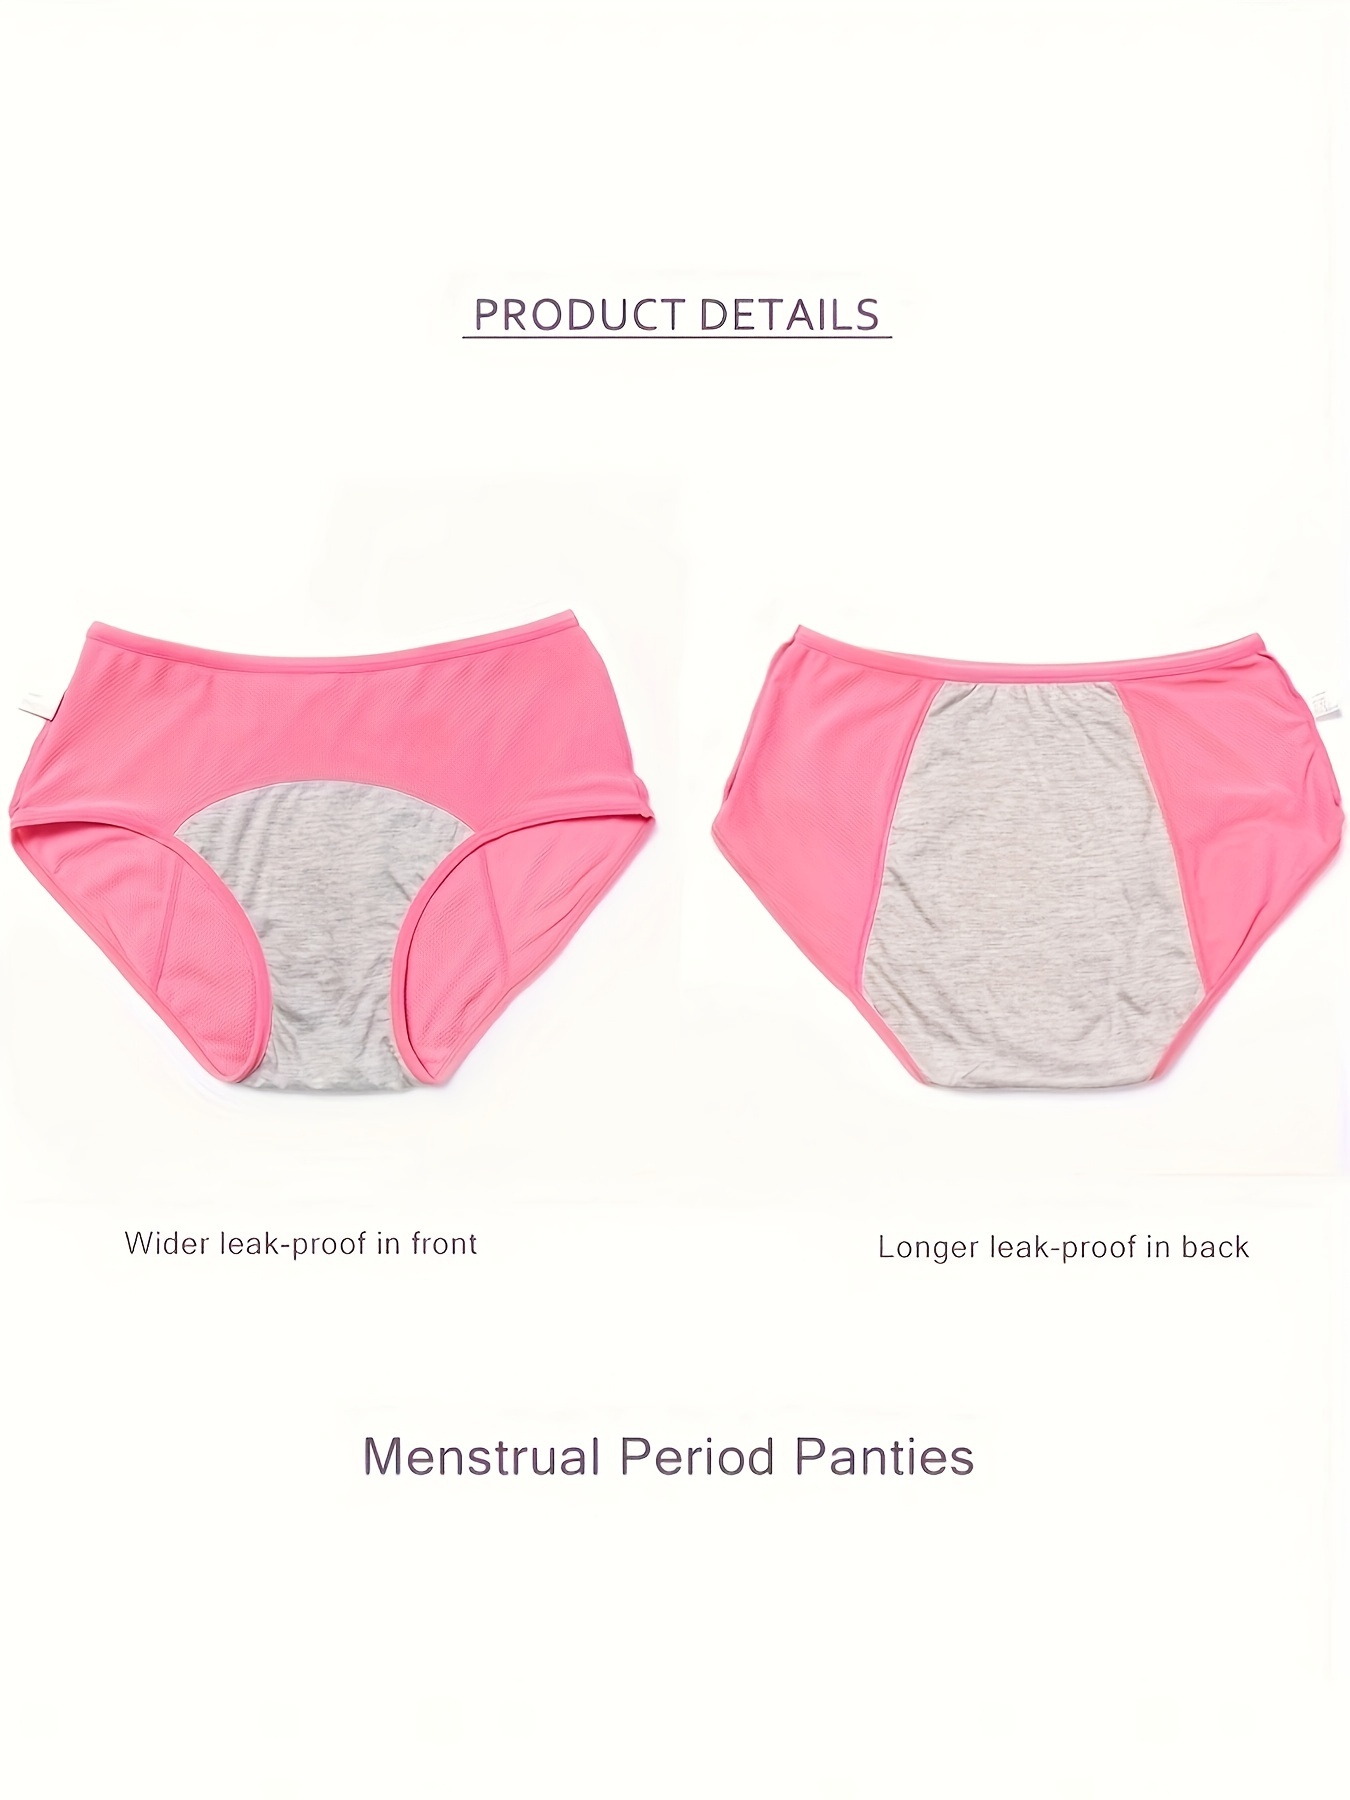 Bundle Packs, Period & Leak-proof underwear packs